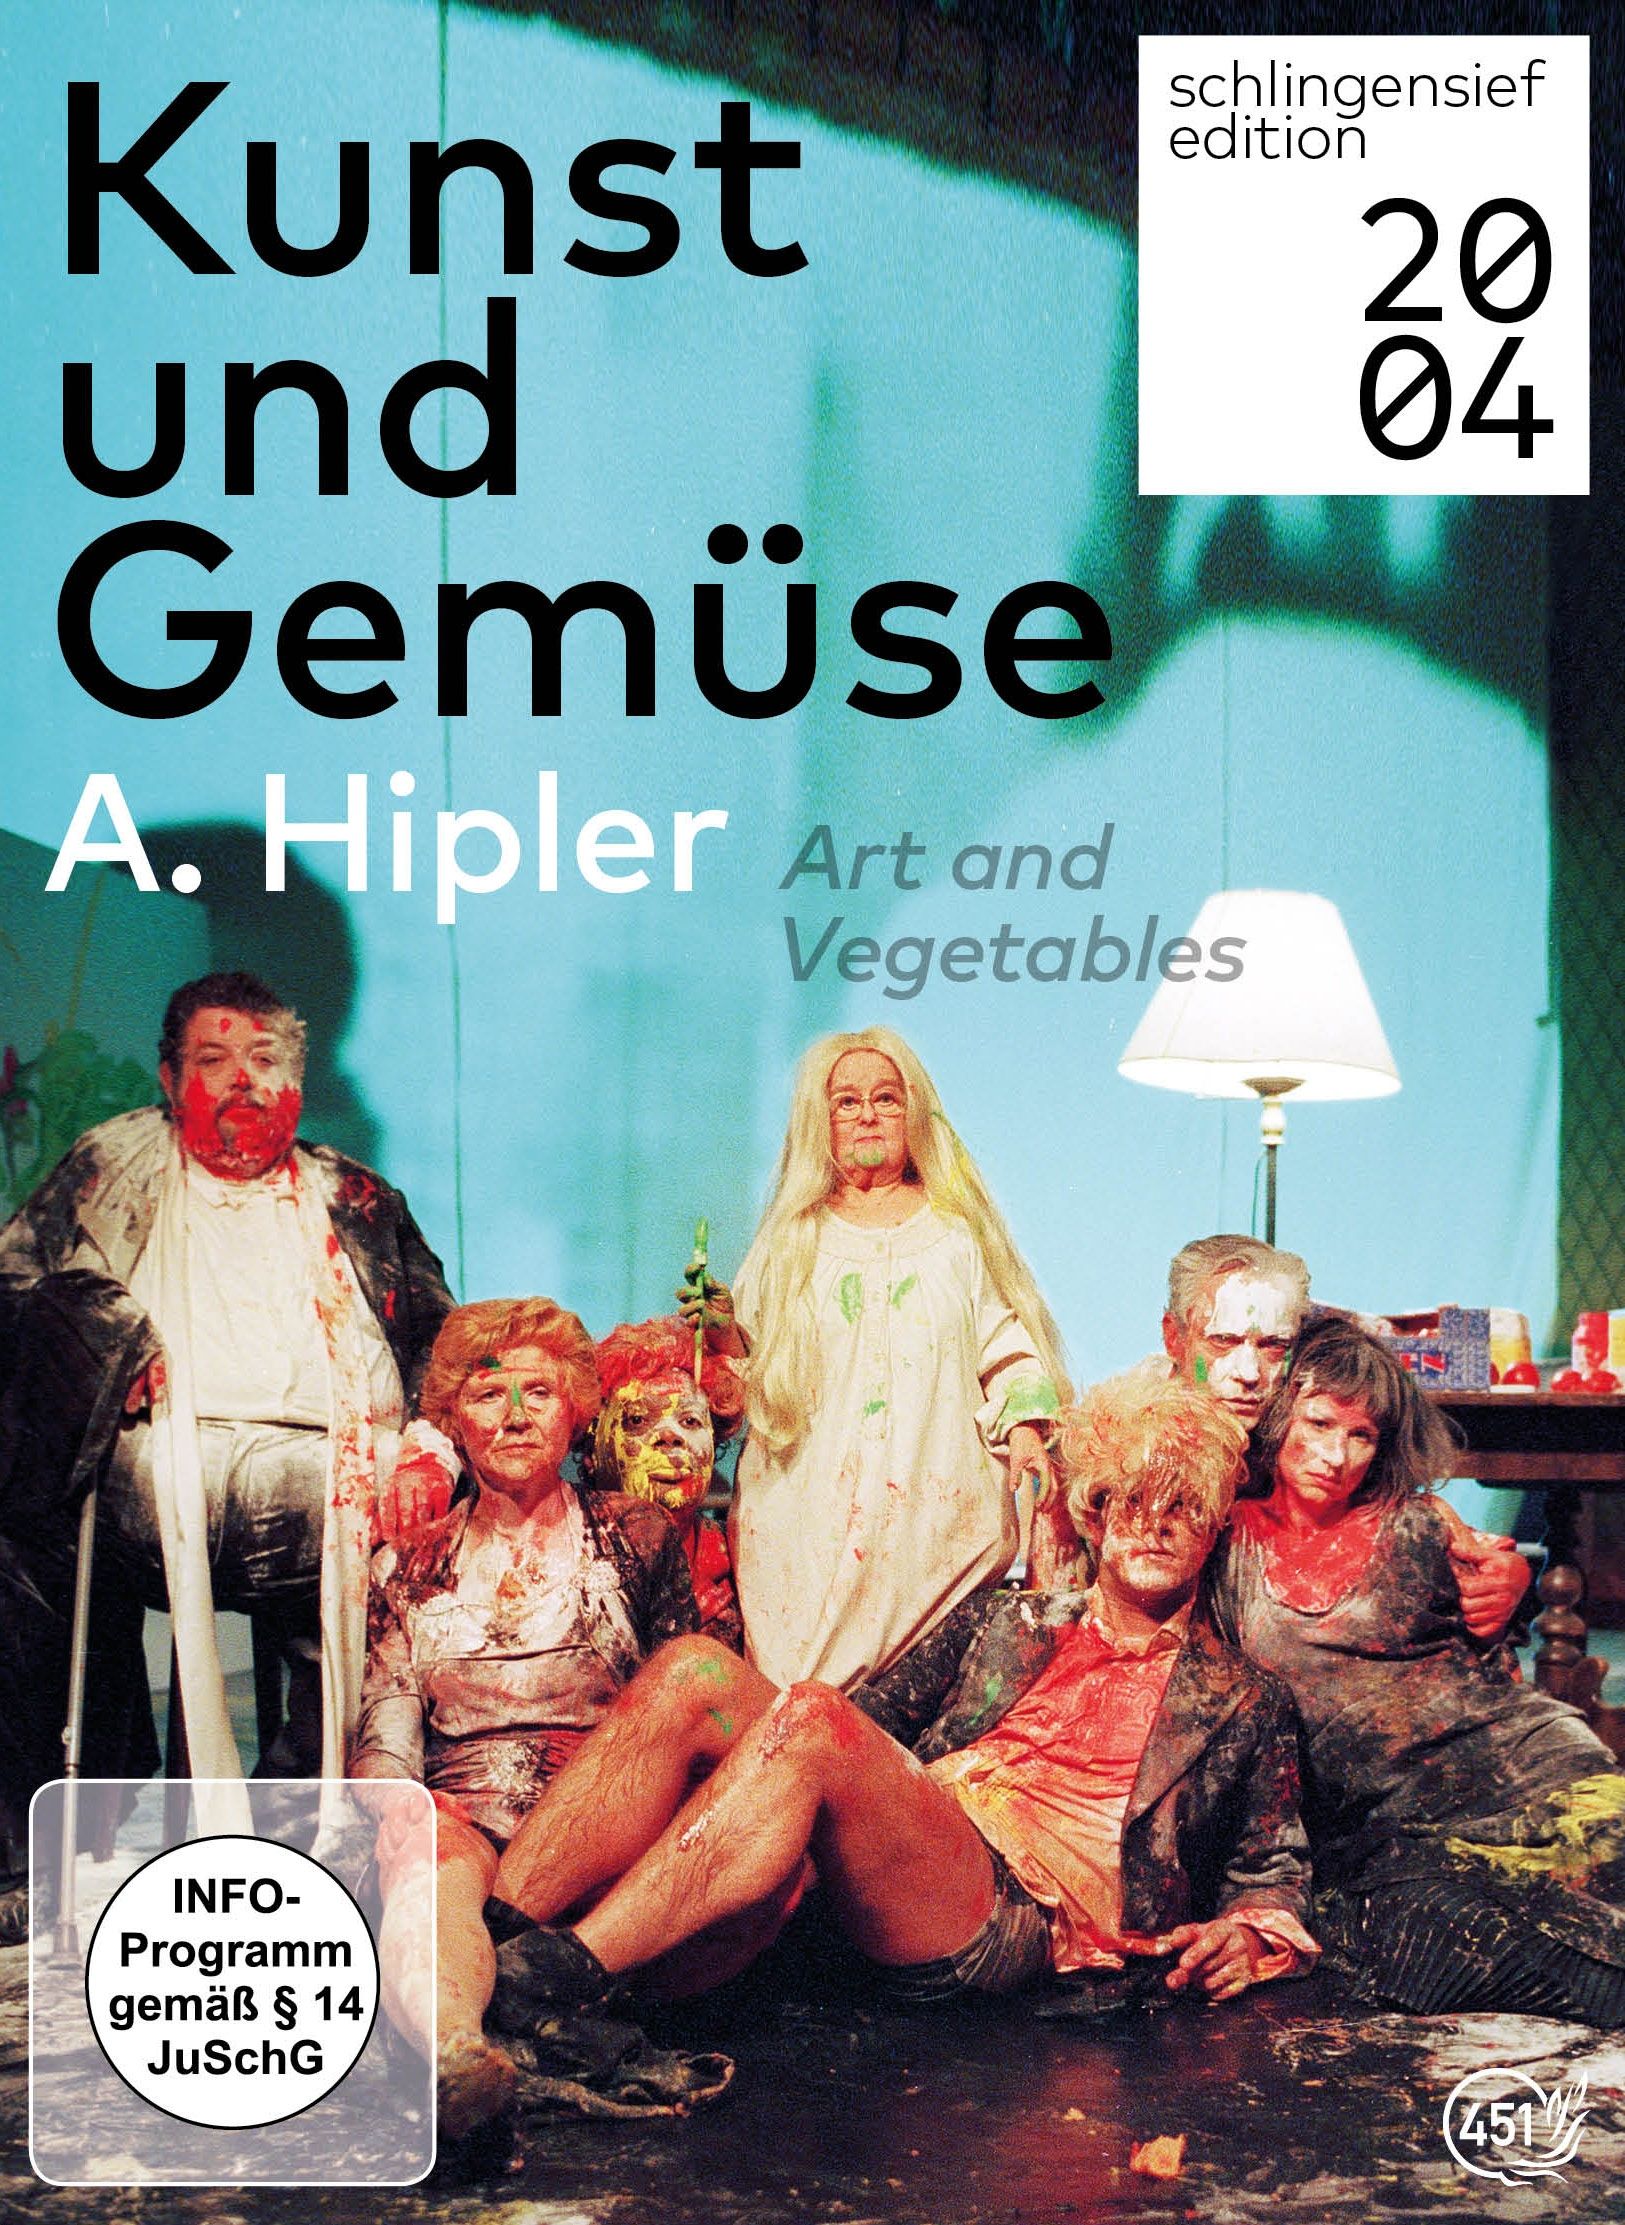 Kunst und Gemüse, A. Hipler - Theater als Krankheit (2 Discs)